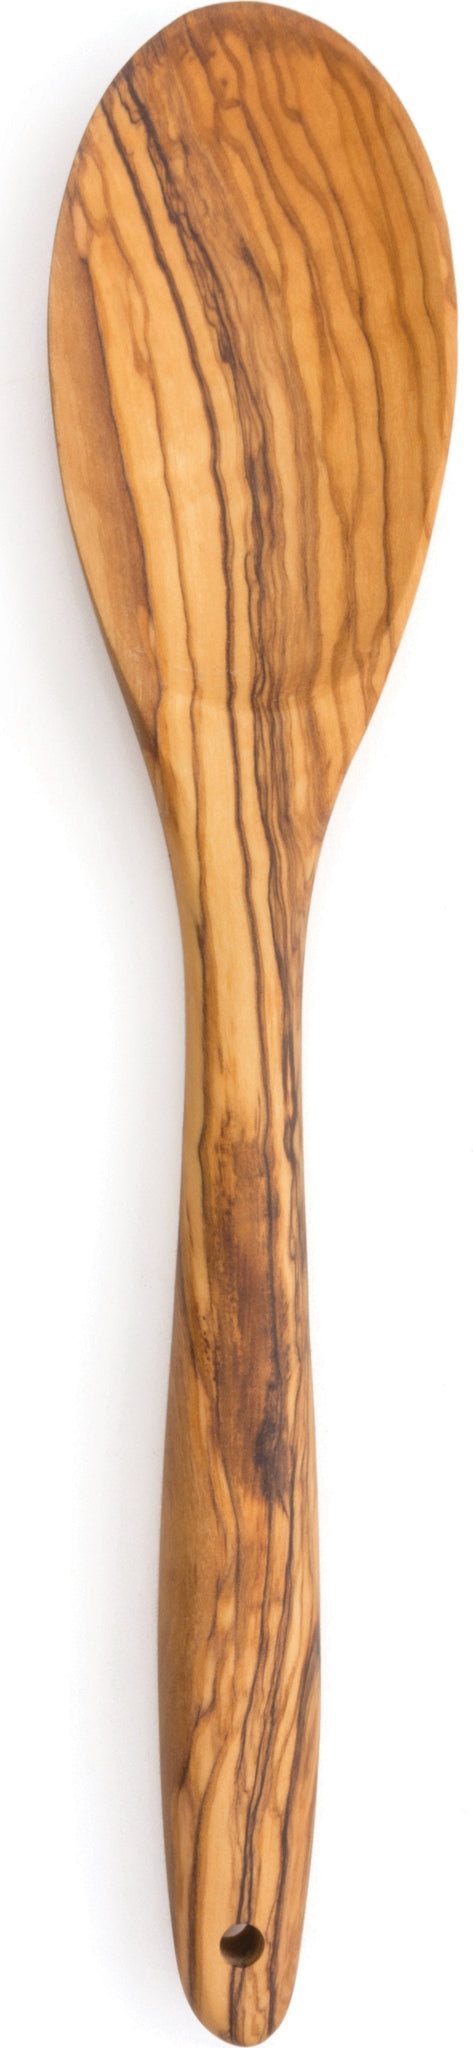 RSVP International - Olive Wood Spoon - OWSPN